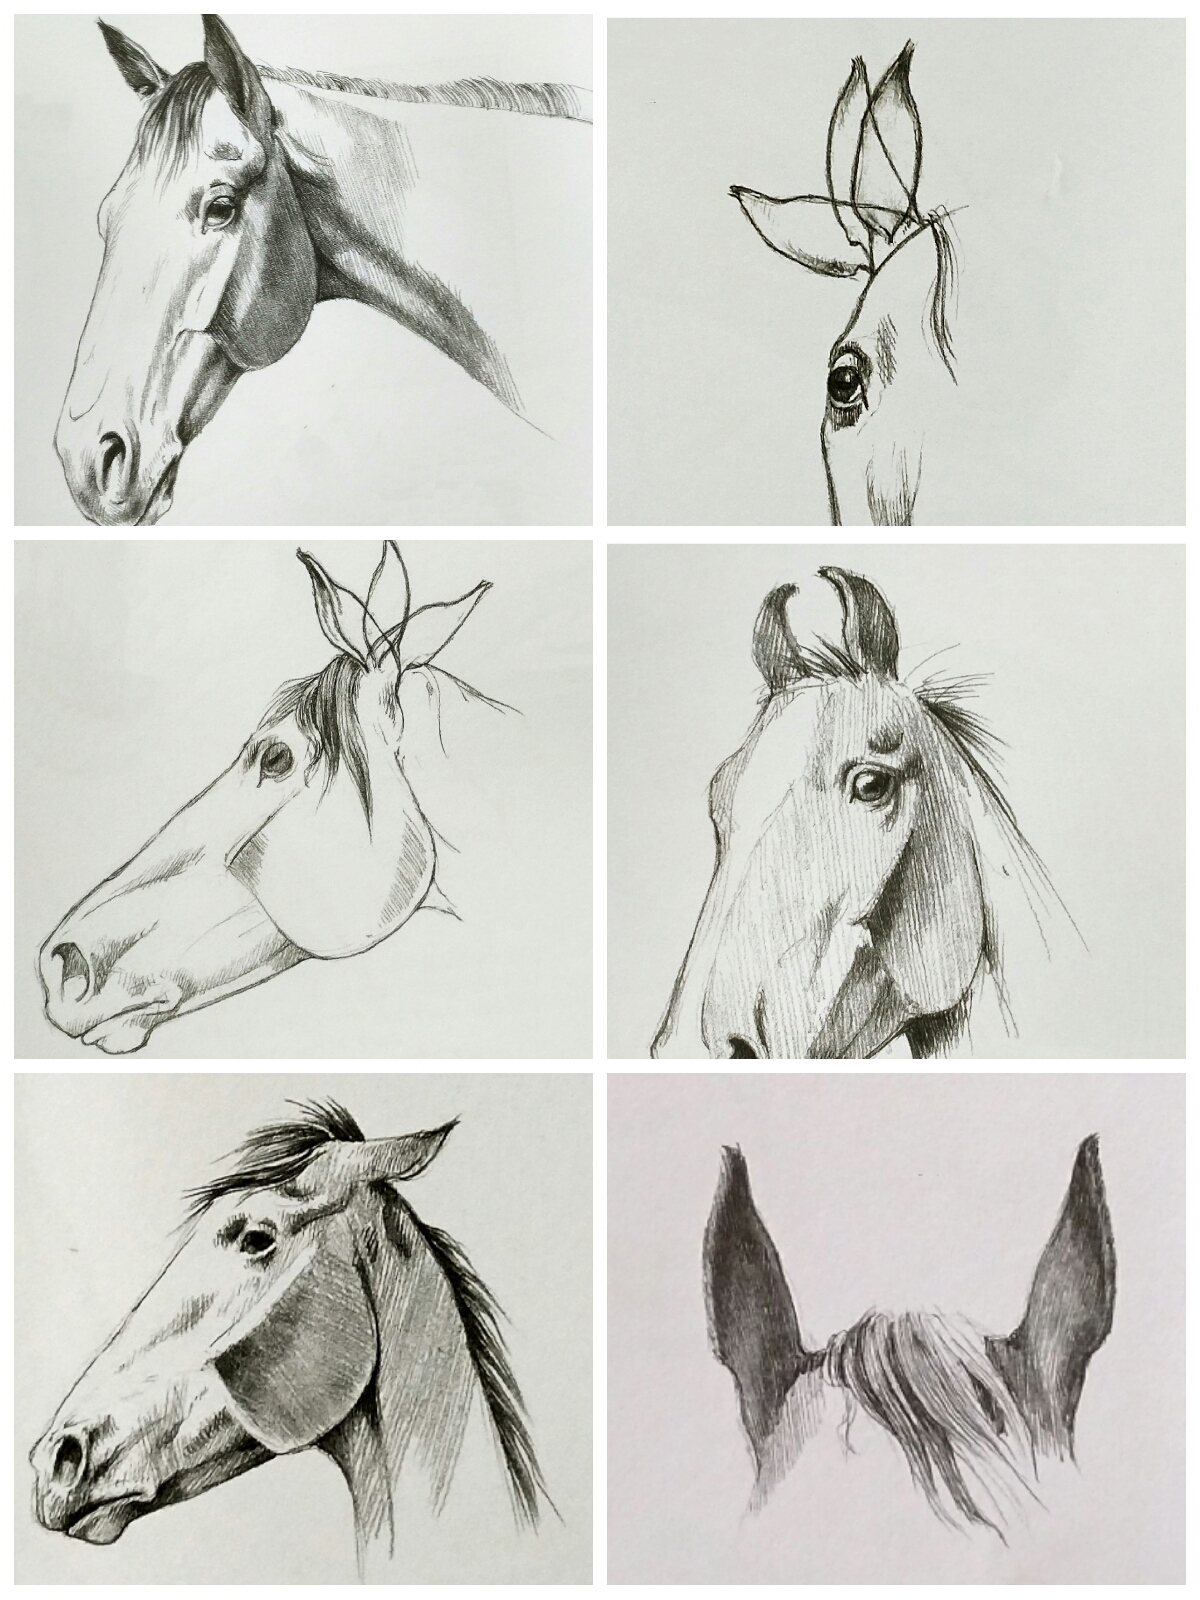 下图是从不同角度所看到的马的眼睛,在画眼球时,应采用球体的阴影画法